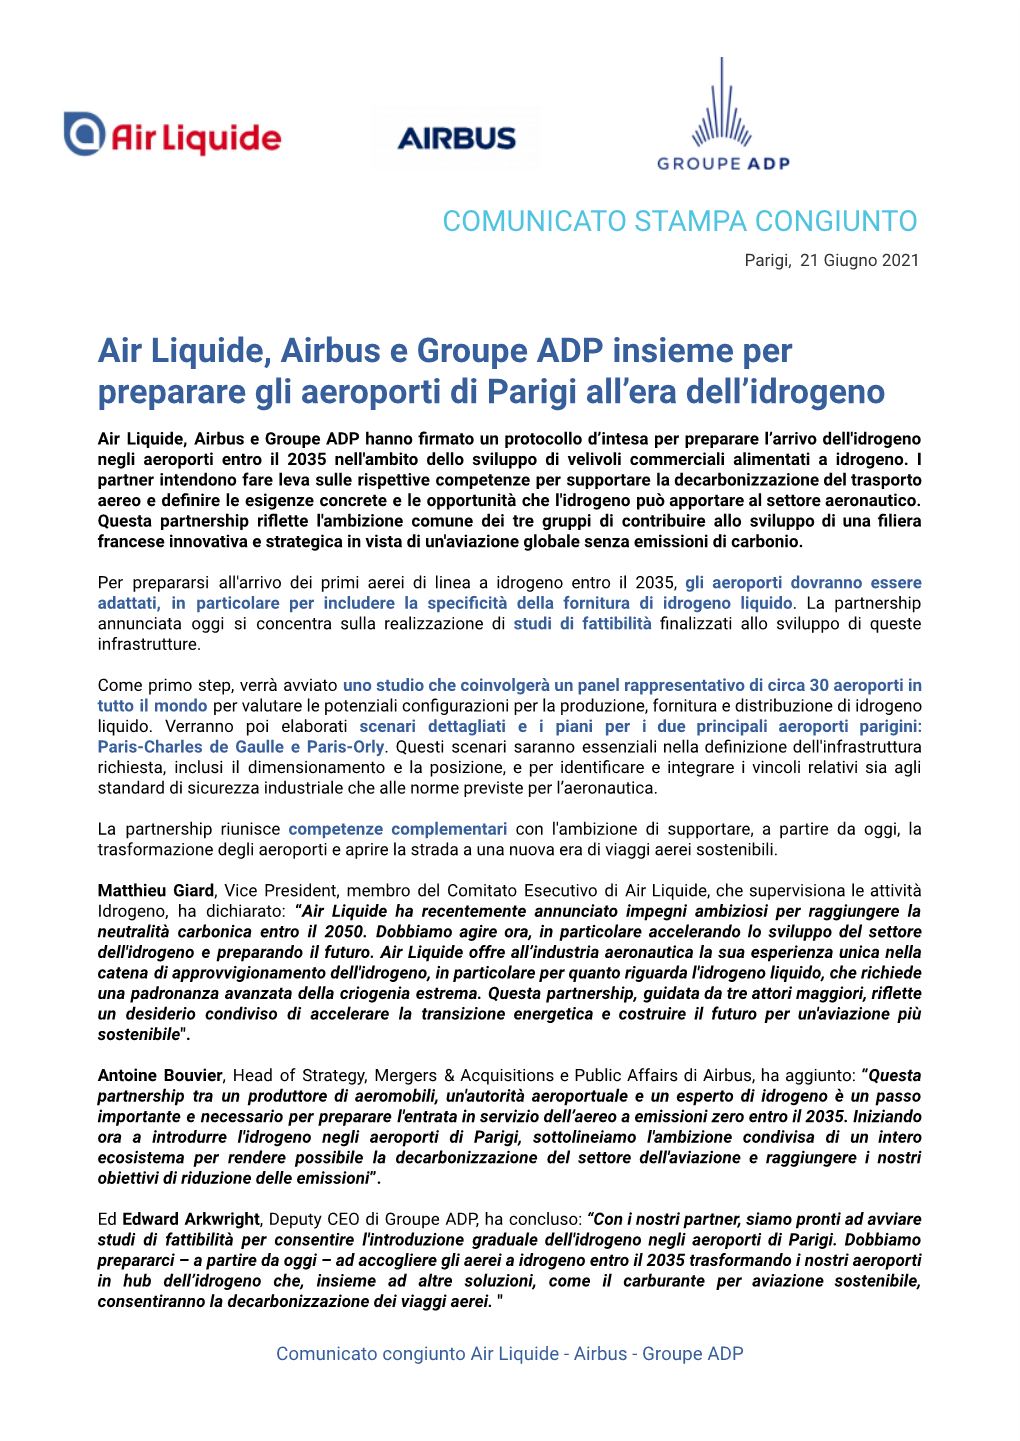 Air Liquide, Airbus E Il Gruppo ADP Collaborano Per Preparare Gli